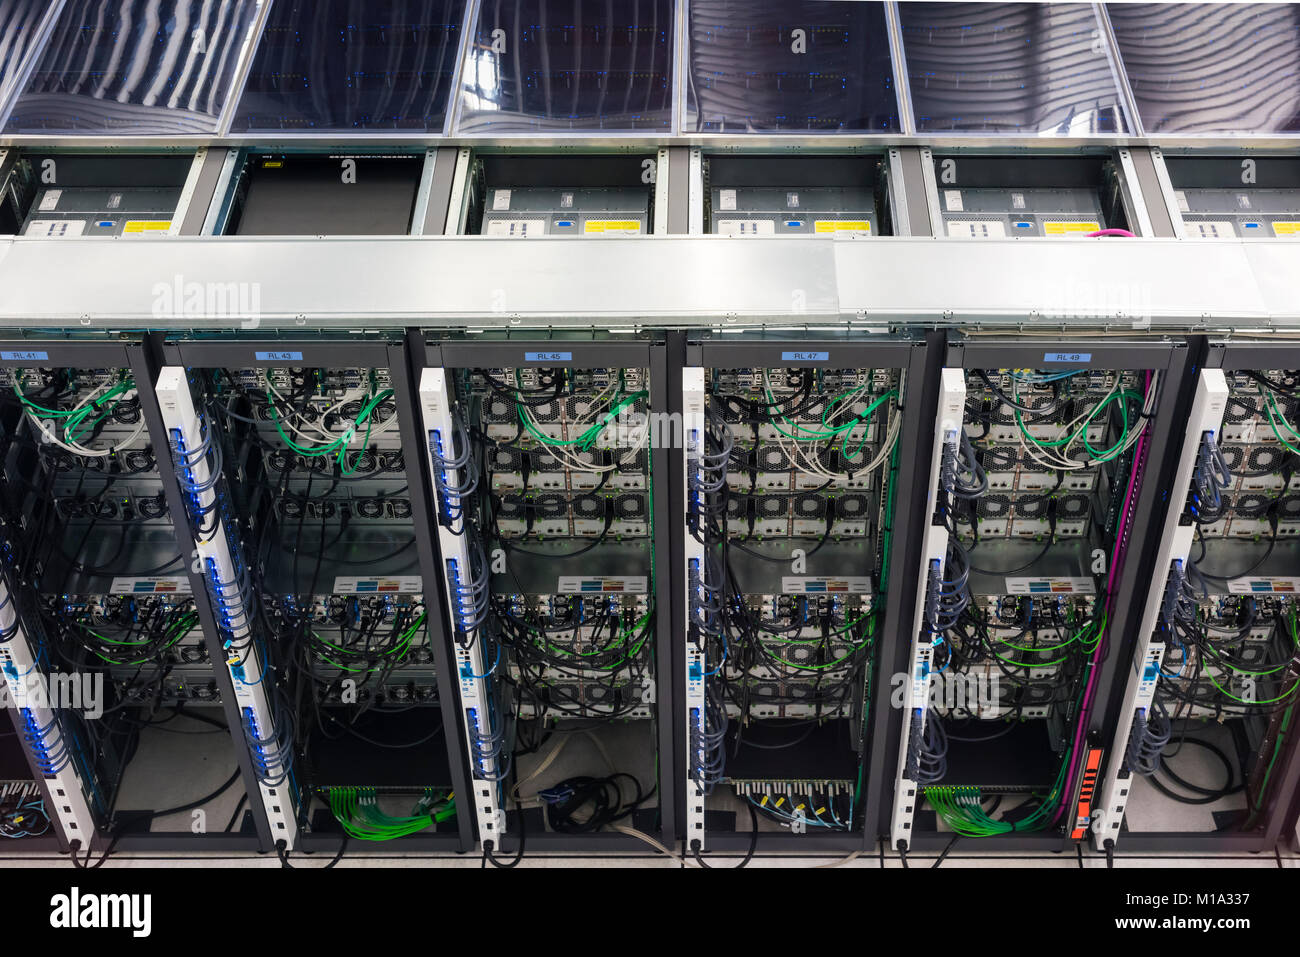 Ginevra, Svizzera - 26 GEN 2018: Server presso il data center dell'Organizzazione europea per la ricerca nucleare (CERN) a Ginevra, Svizzera. Foto Stock